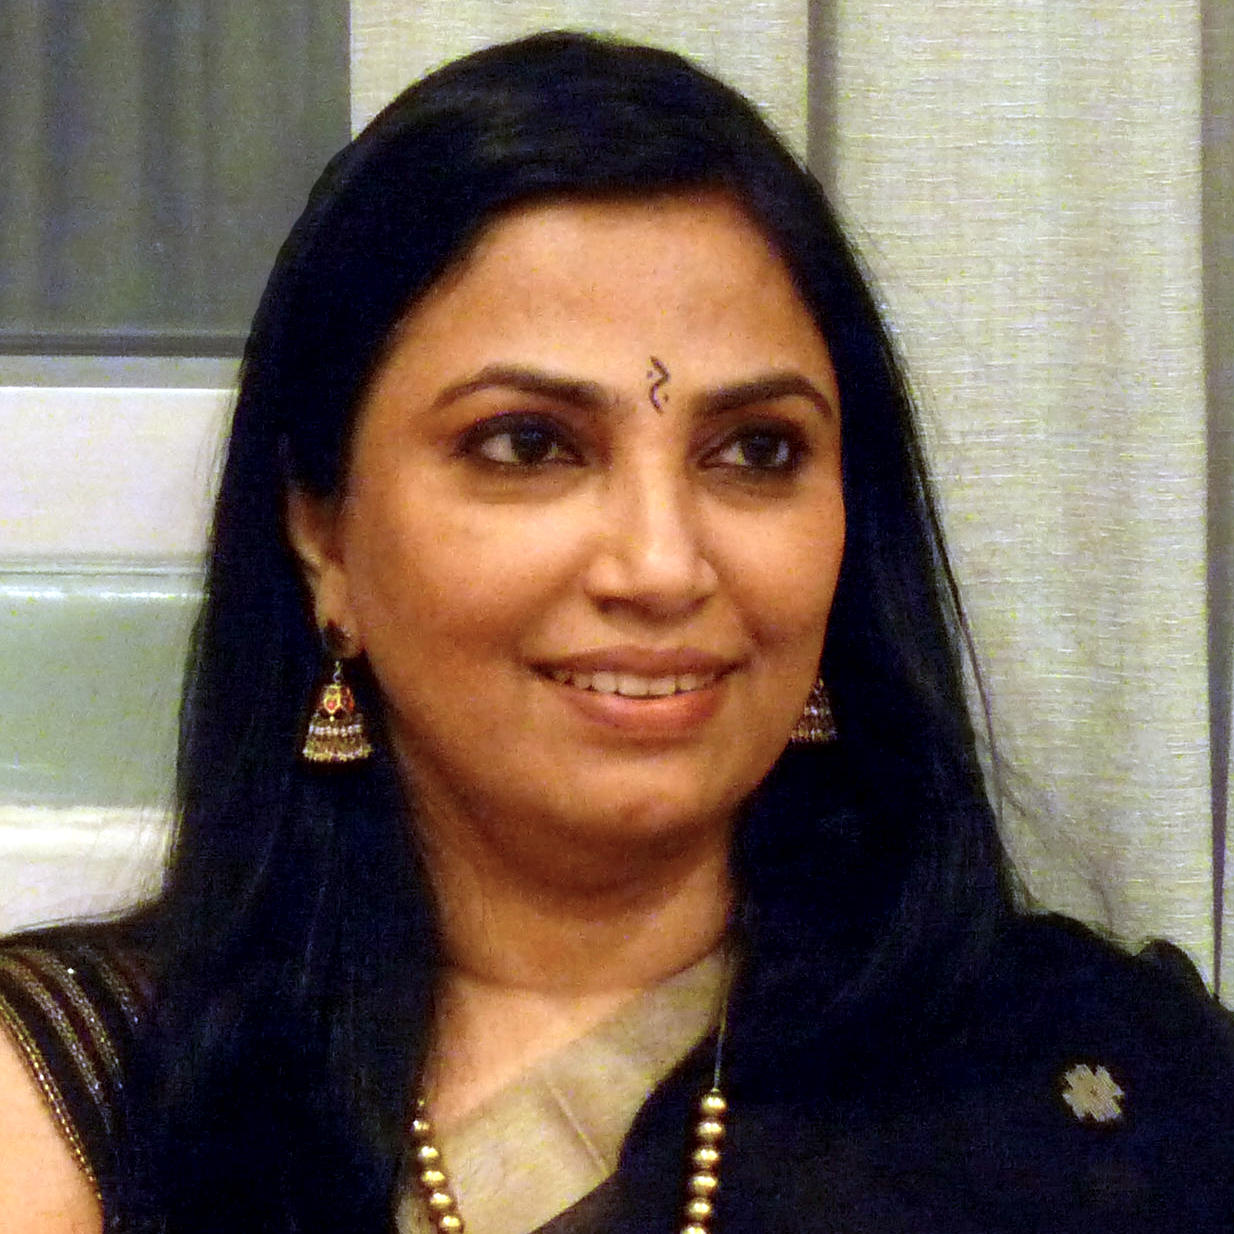 Dr Saroja Balan